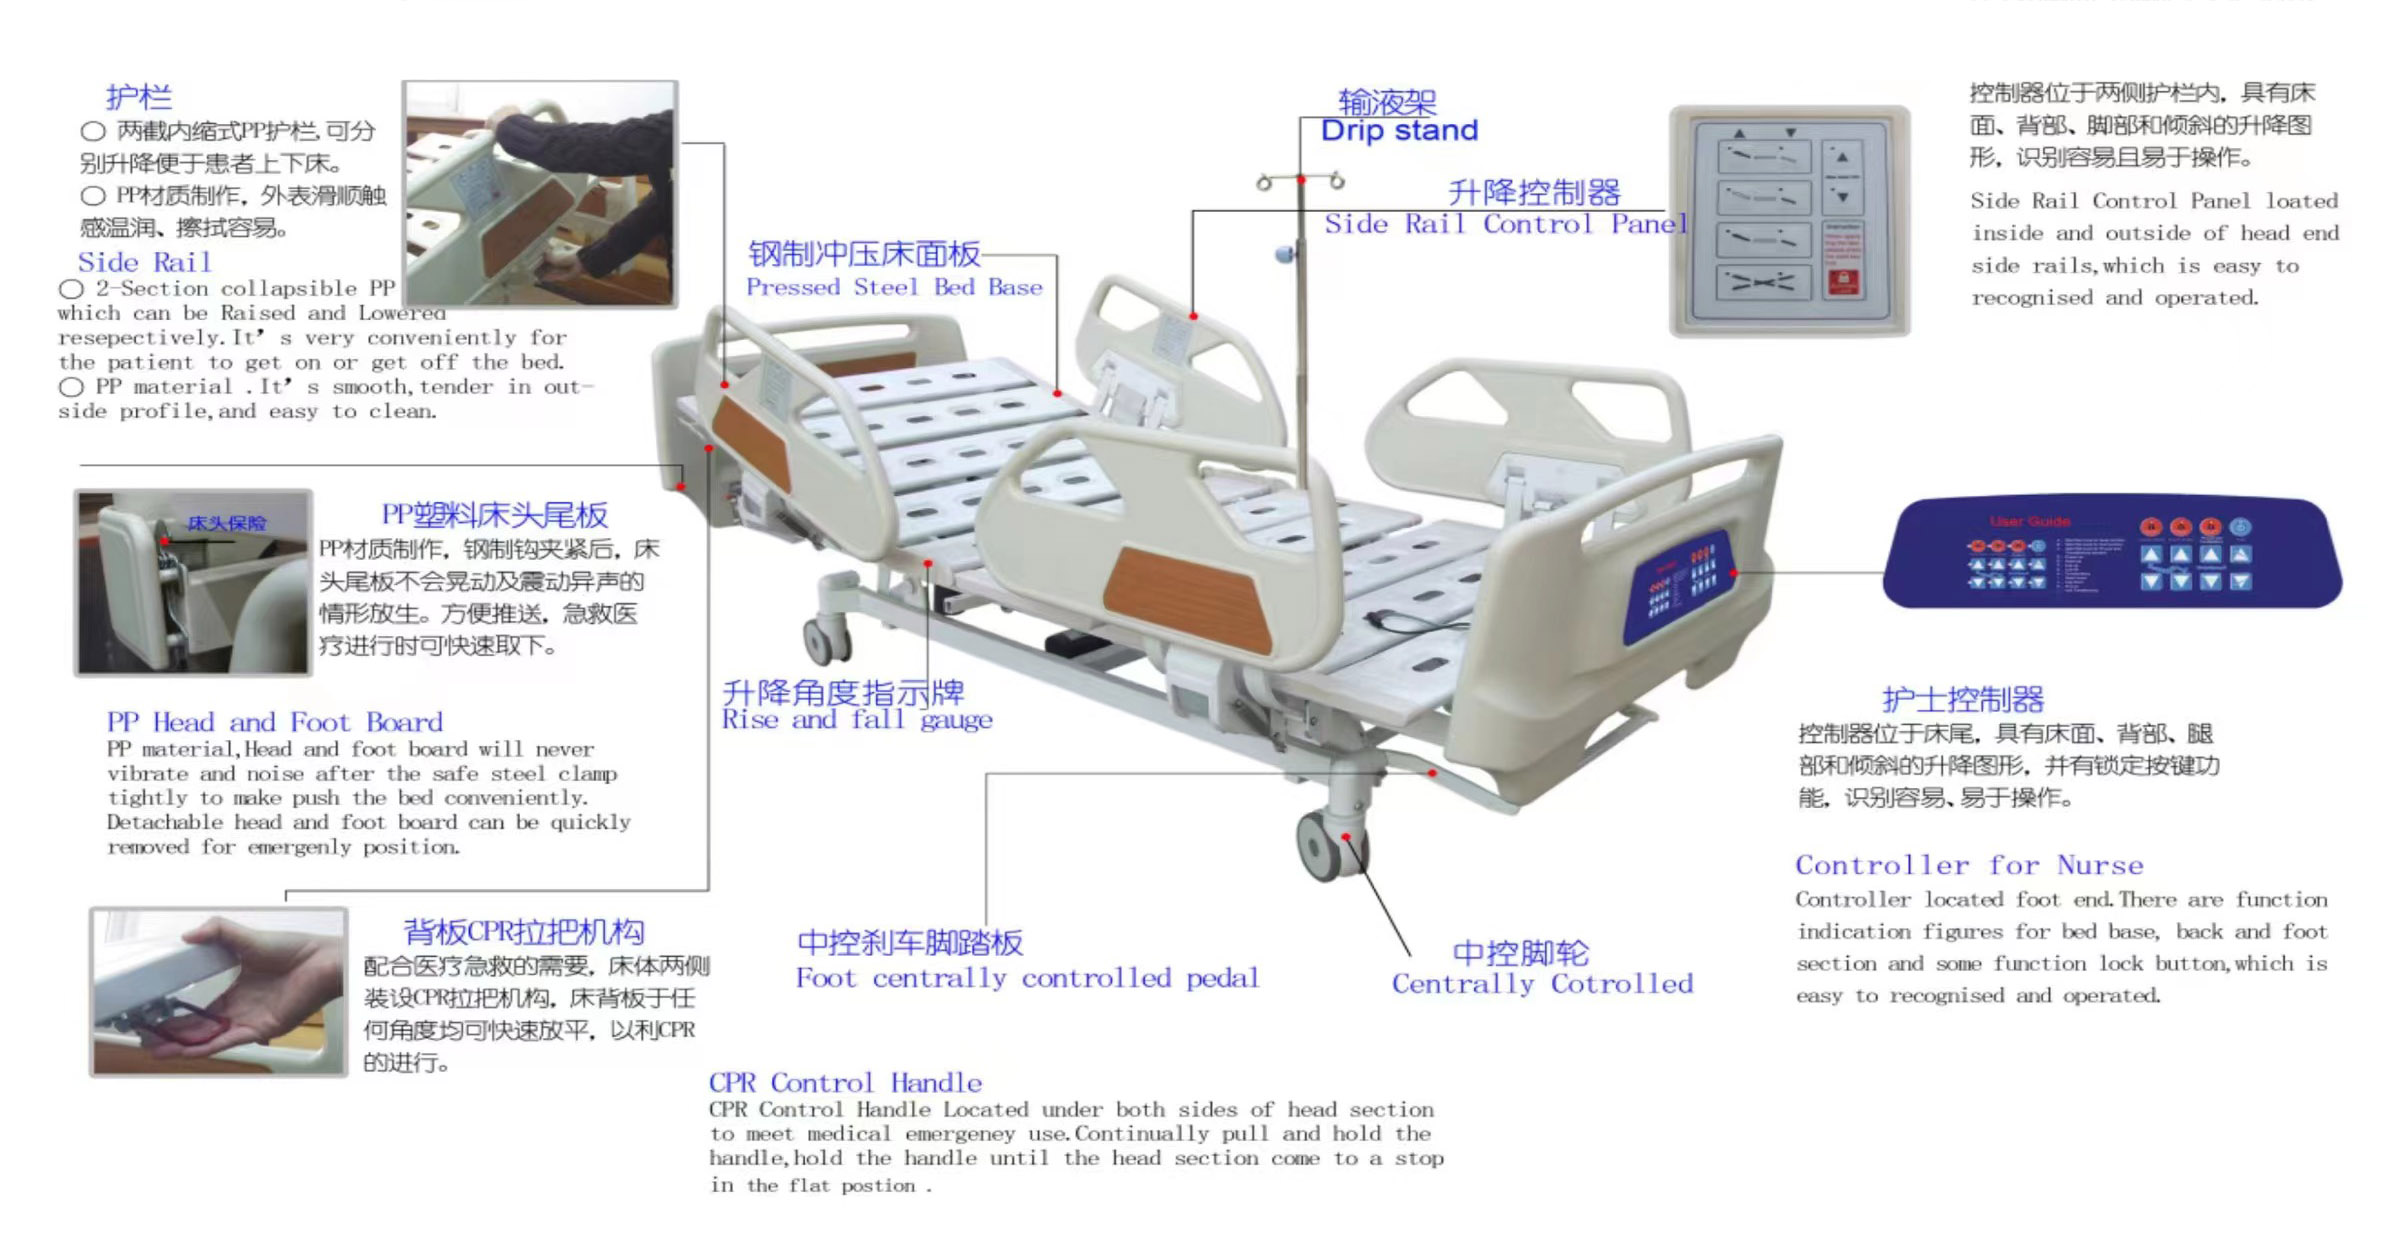 เตียงโรงพยาบาลไฟฟ้า (เตียงสลายลิ่มเลือด) (7)